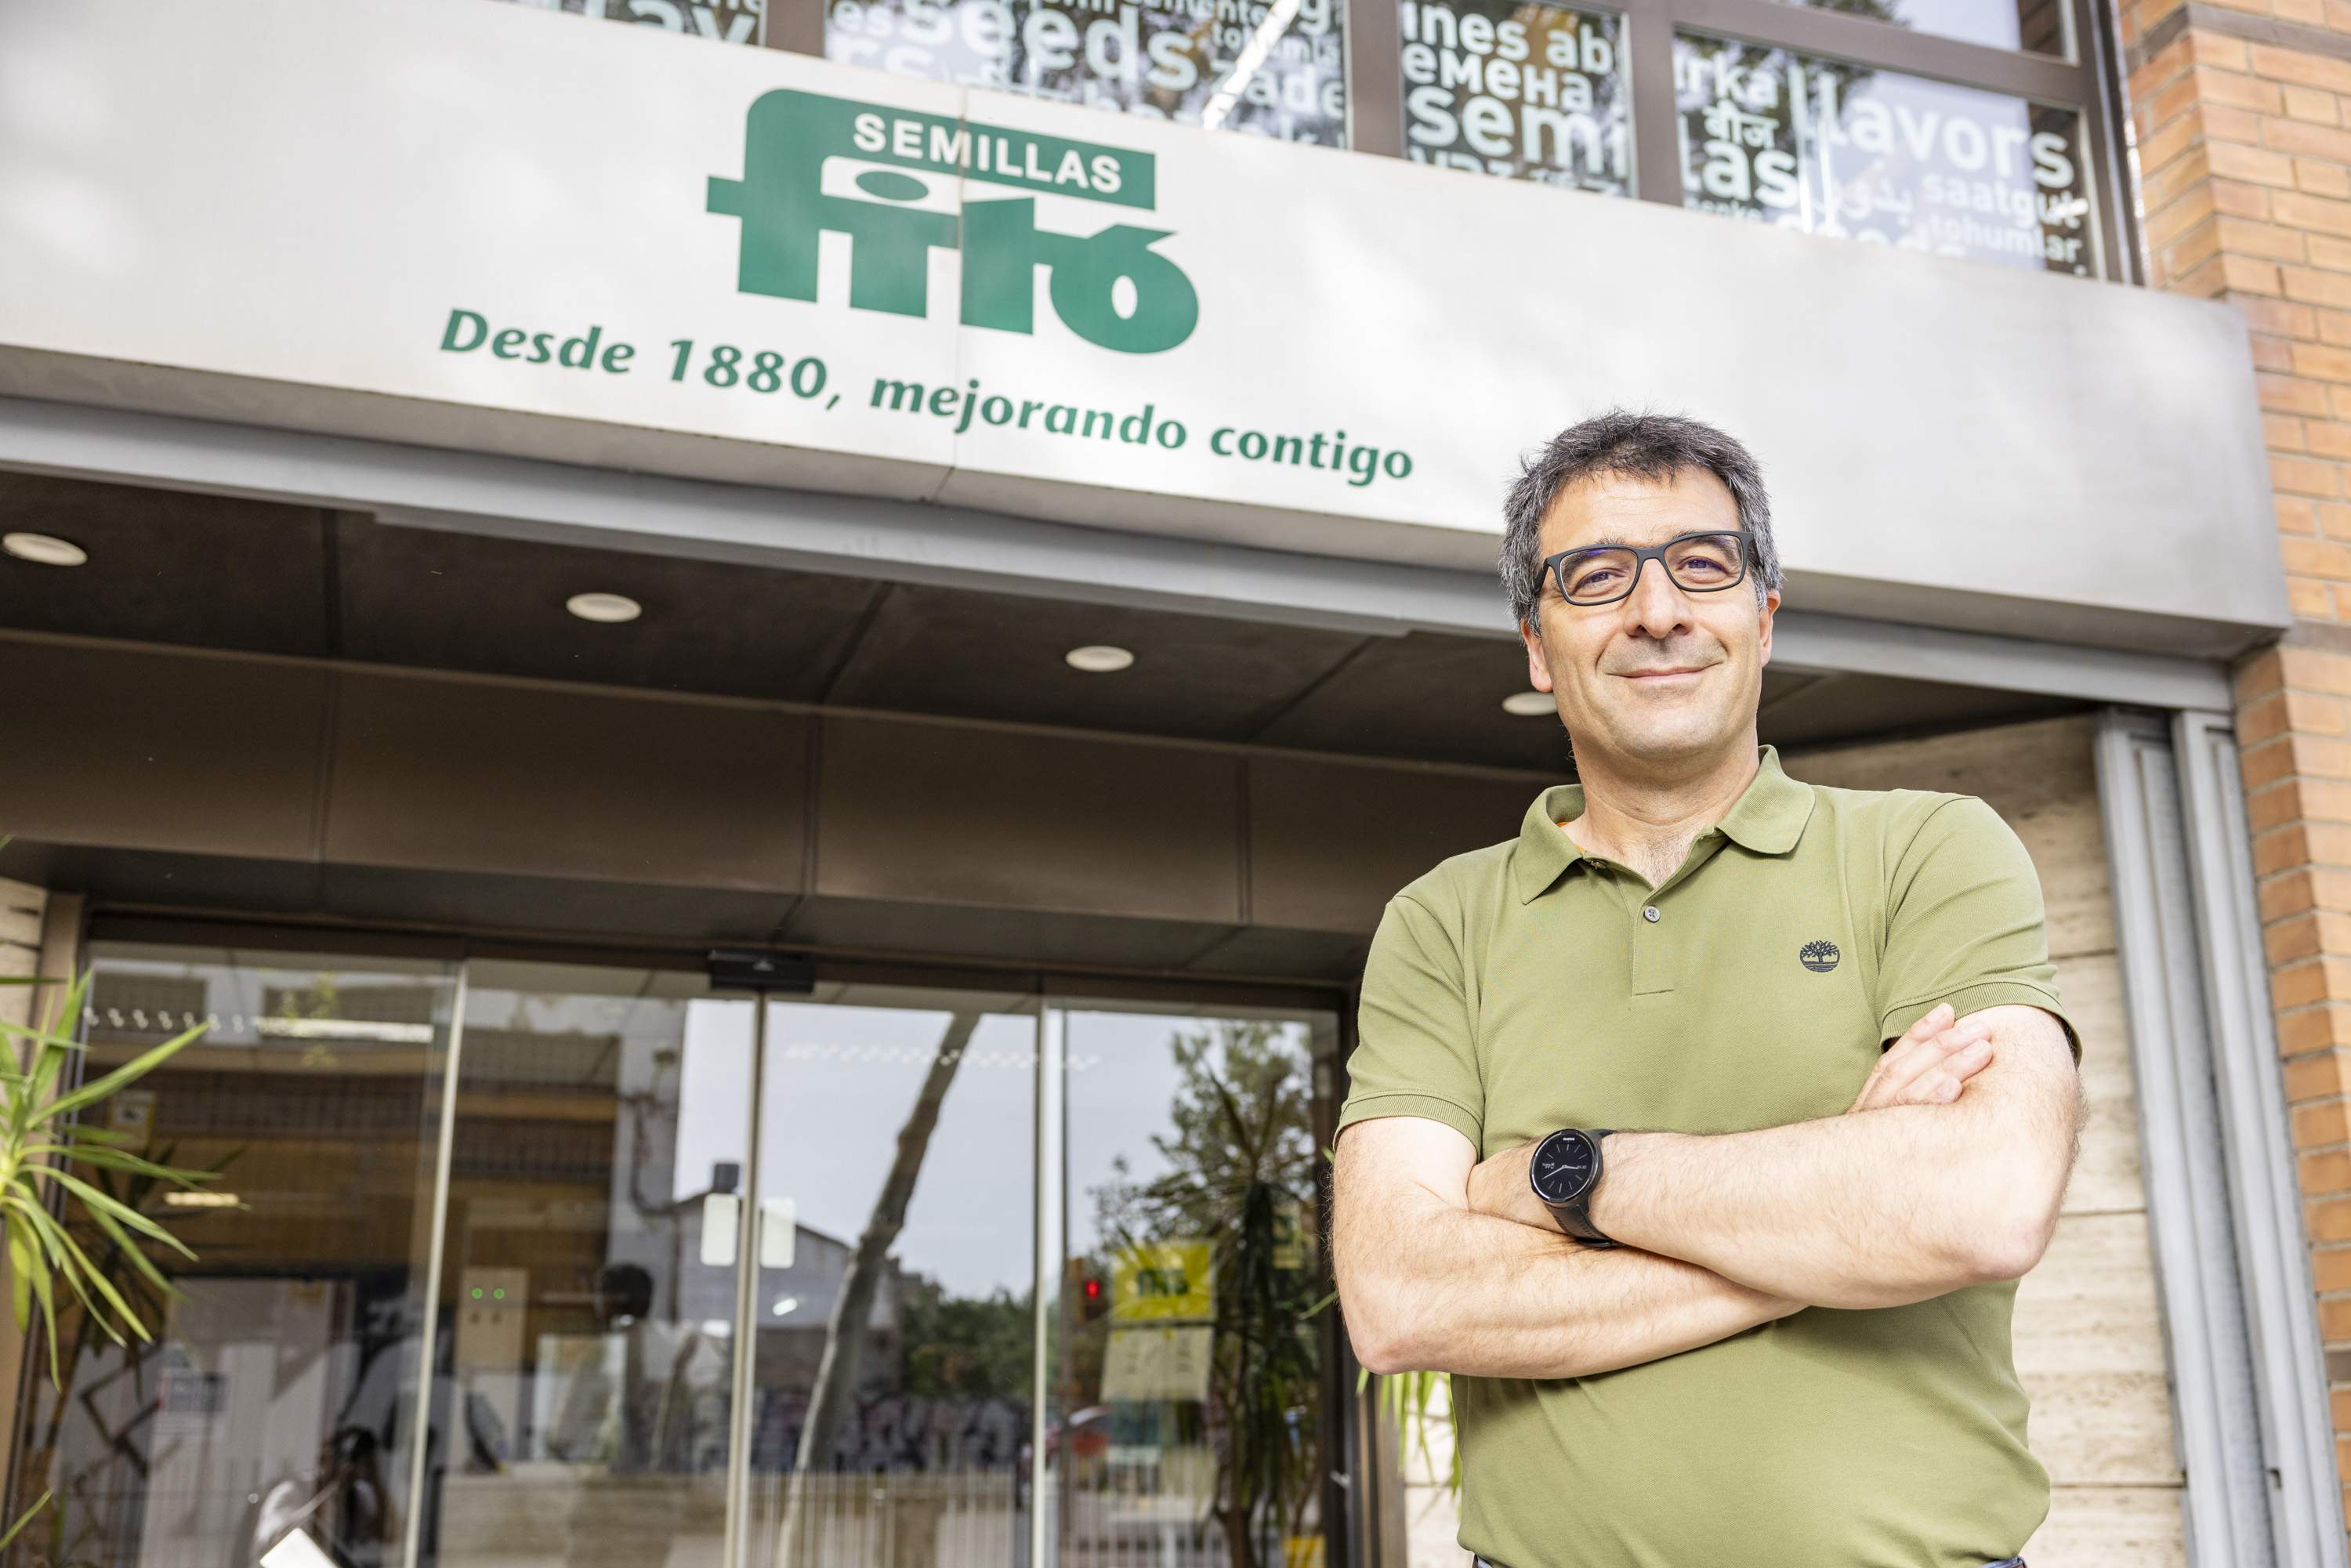 El president de Semillas Fitó, Eduard Fitó, és membre de la cinquena generació de la familia Fitó. Foto: Carlos Baglietto